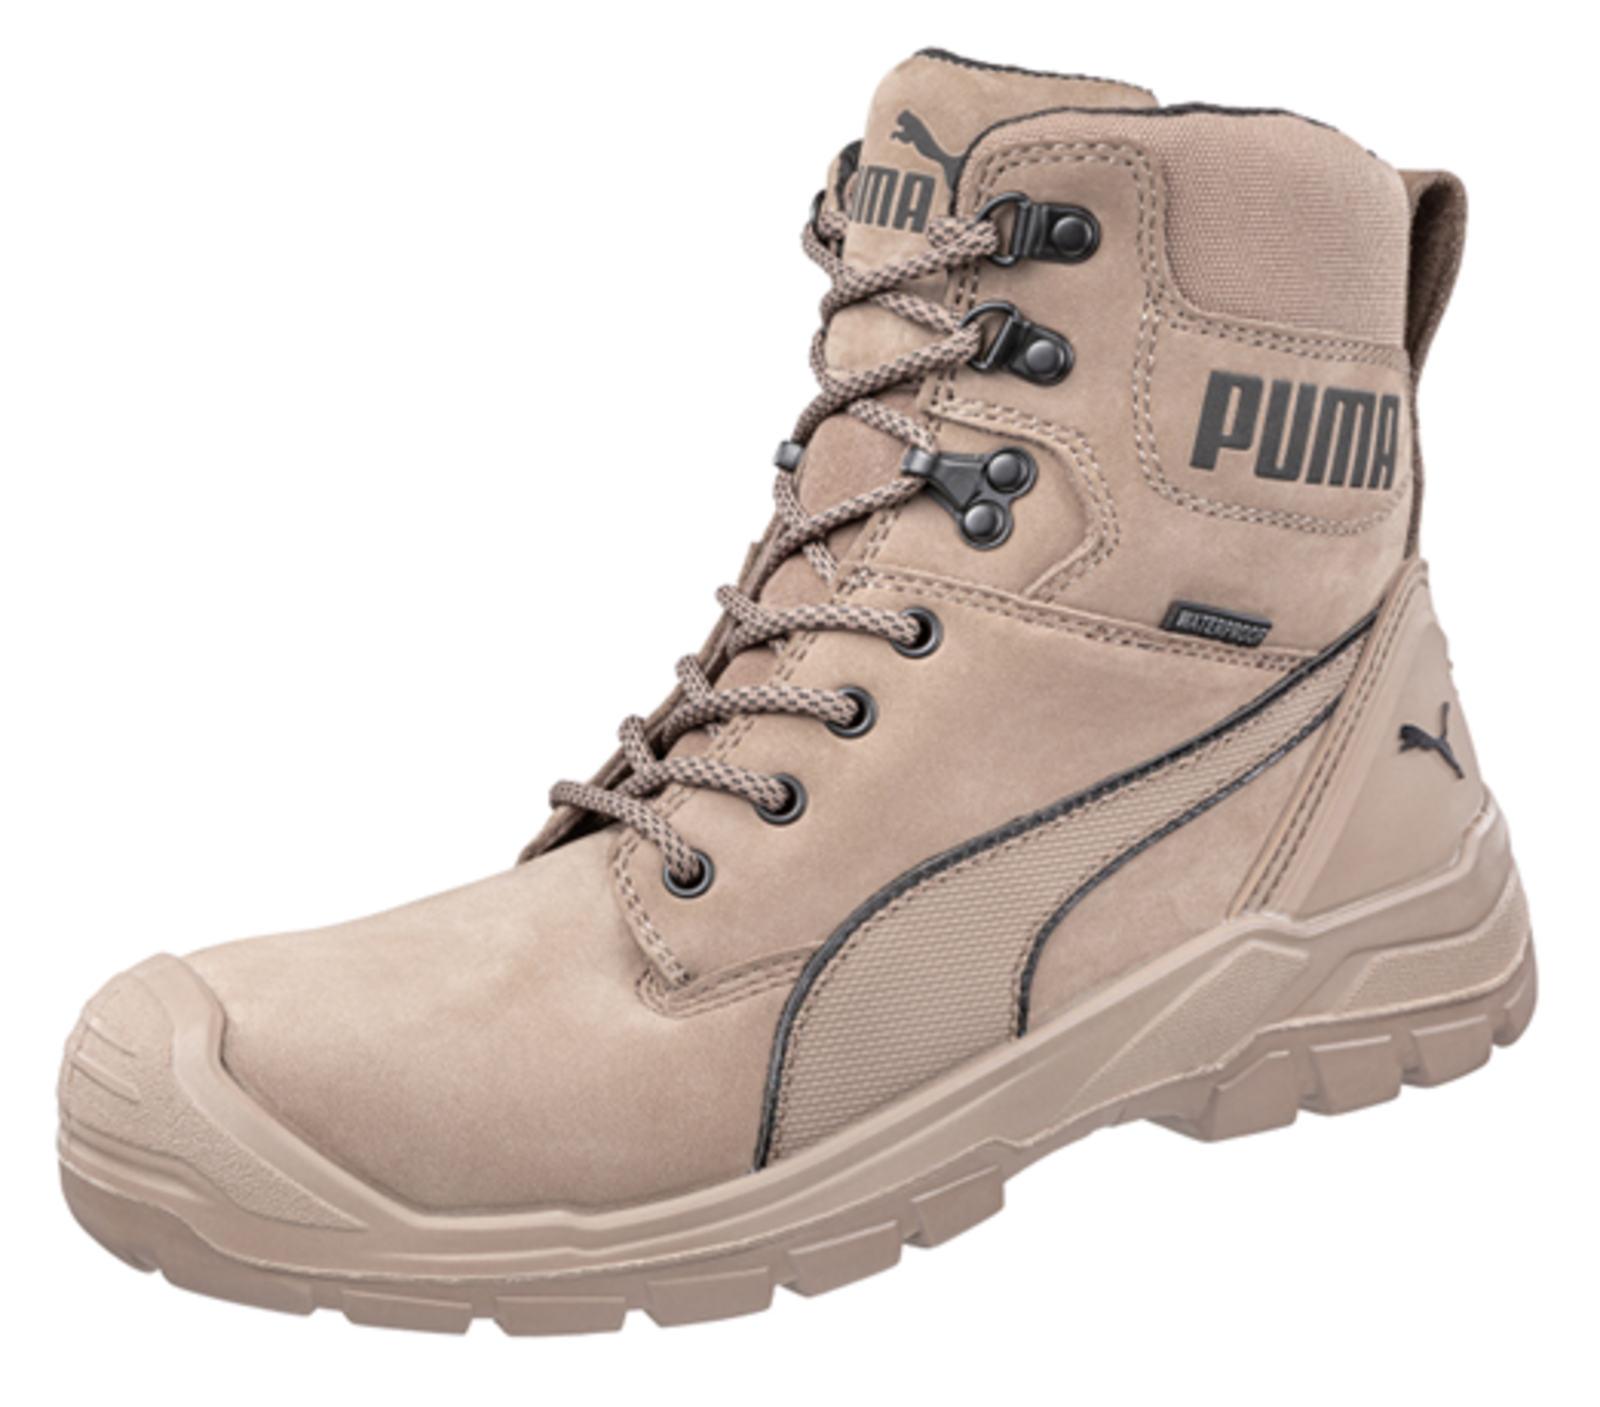 Bezpečnostná obuv Puma Conquest Stone S3 - veľkosť: 47, farba: svetlohnedá